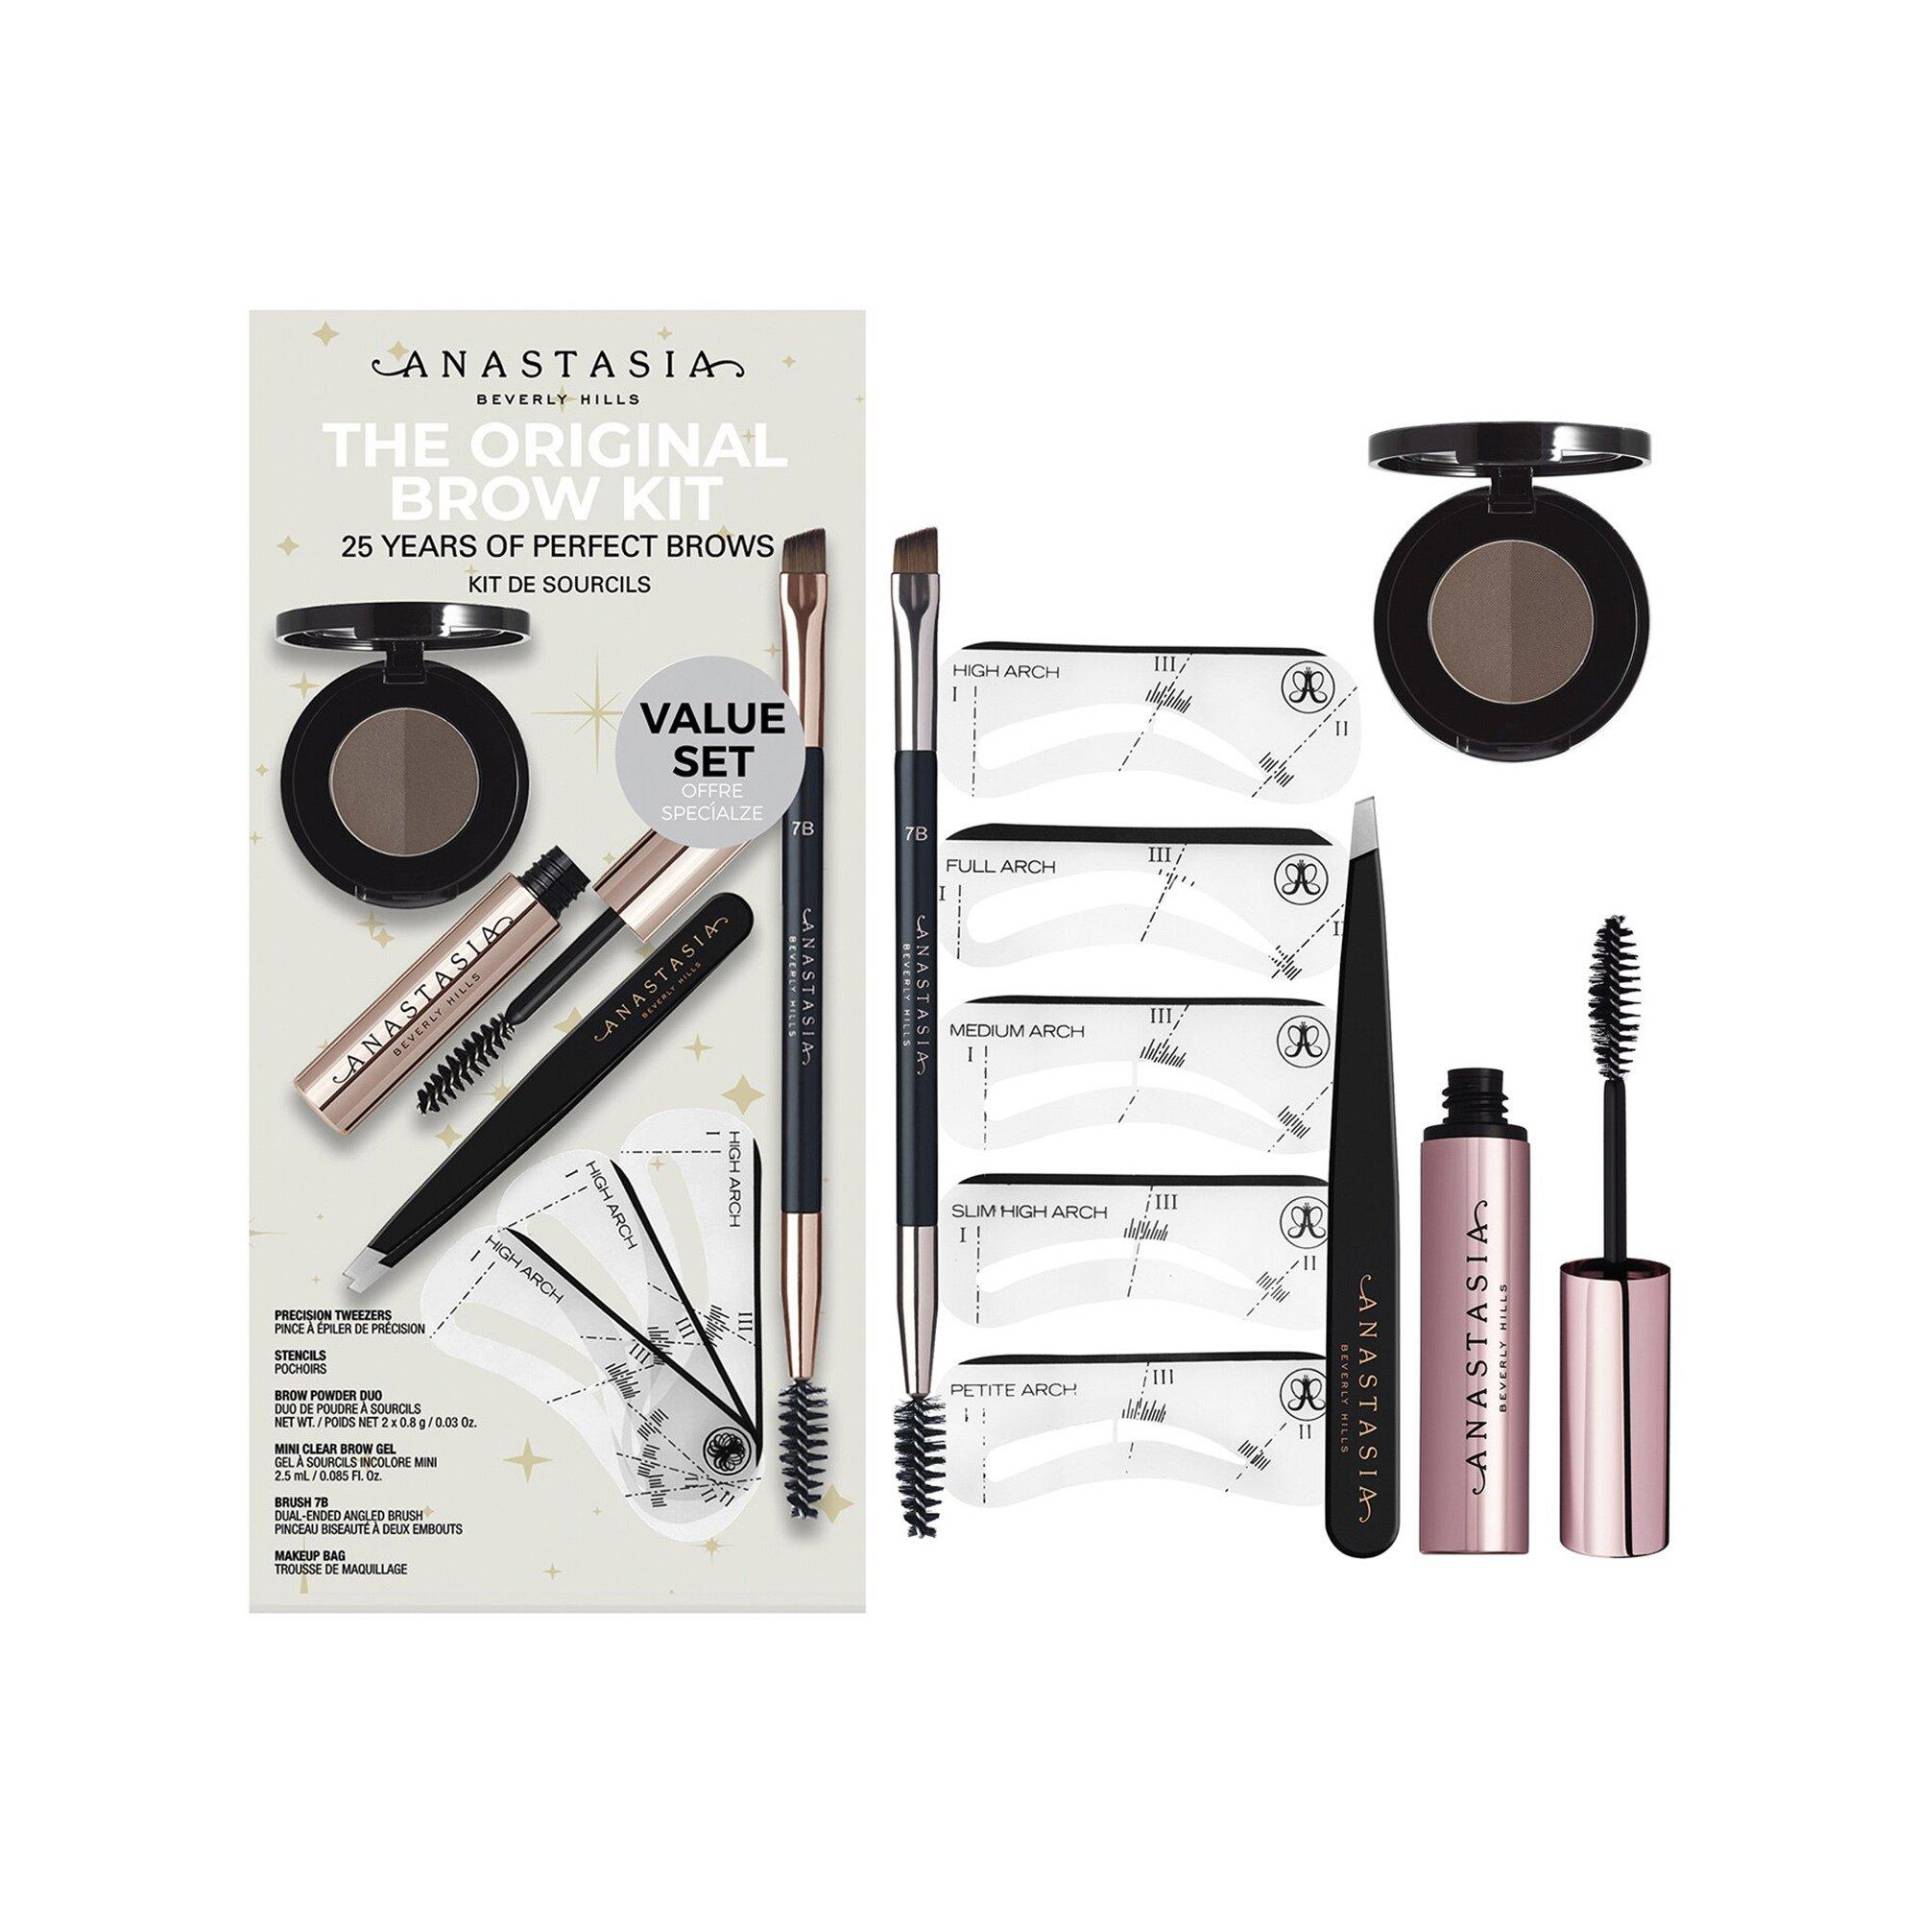 Og Brow Kit - Augenbrauen-make-up-set Damen EBONY Set von Anastasia Beverly Hills